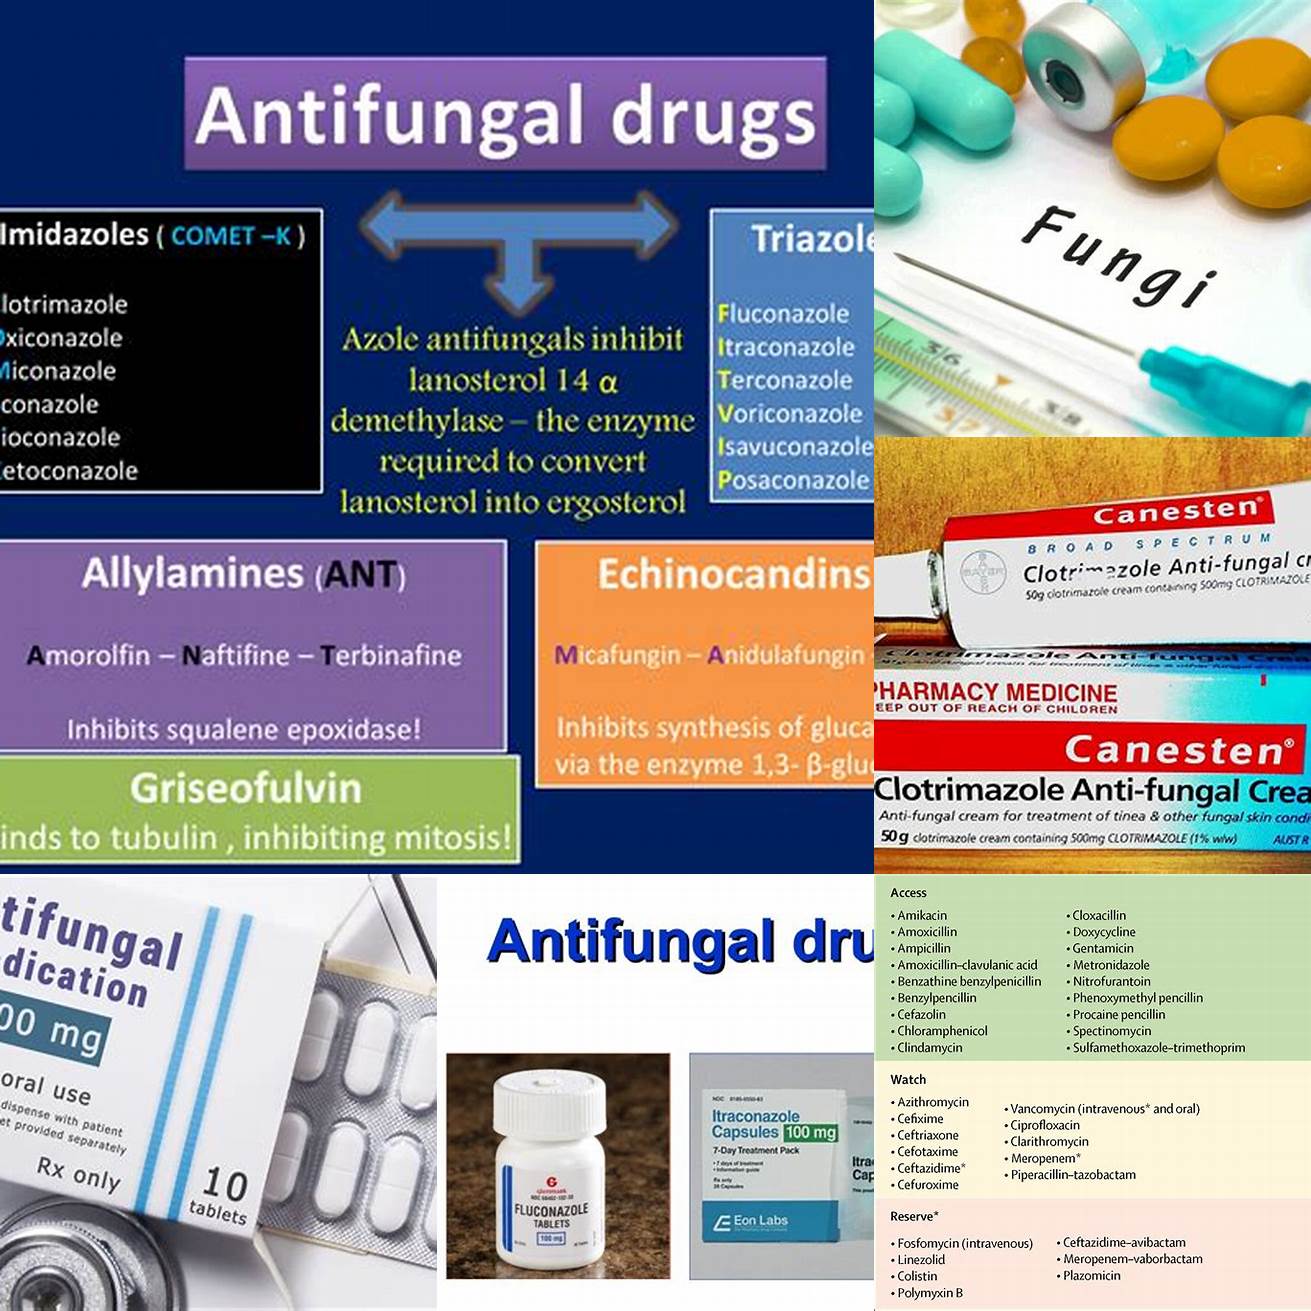 Antibiotics or antifungal medications